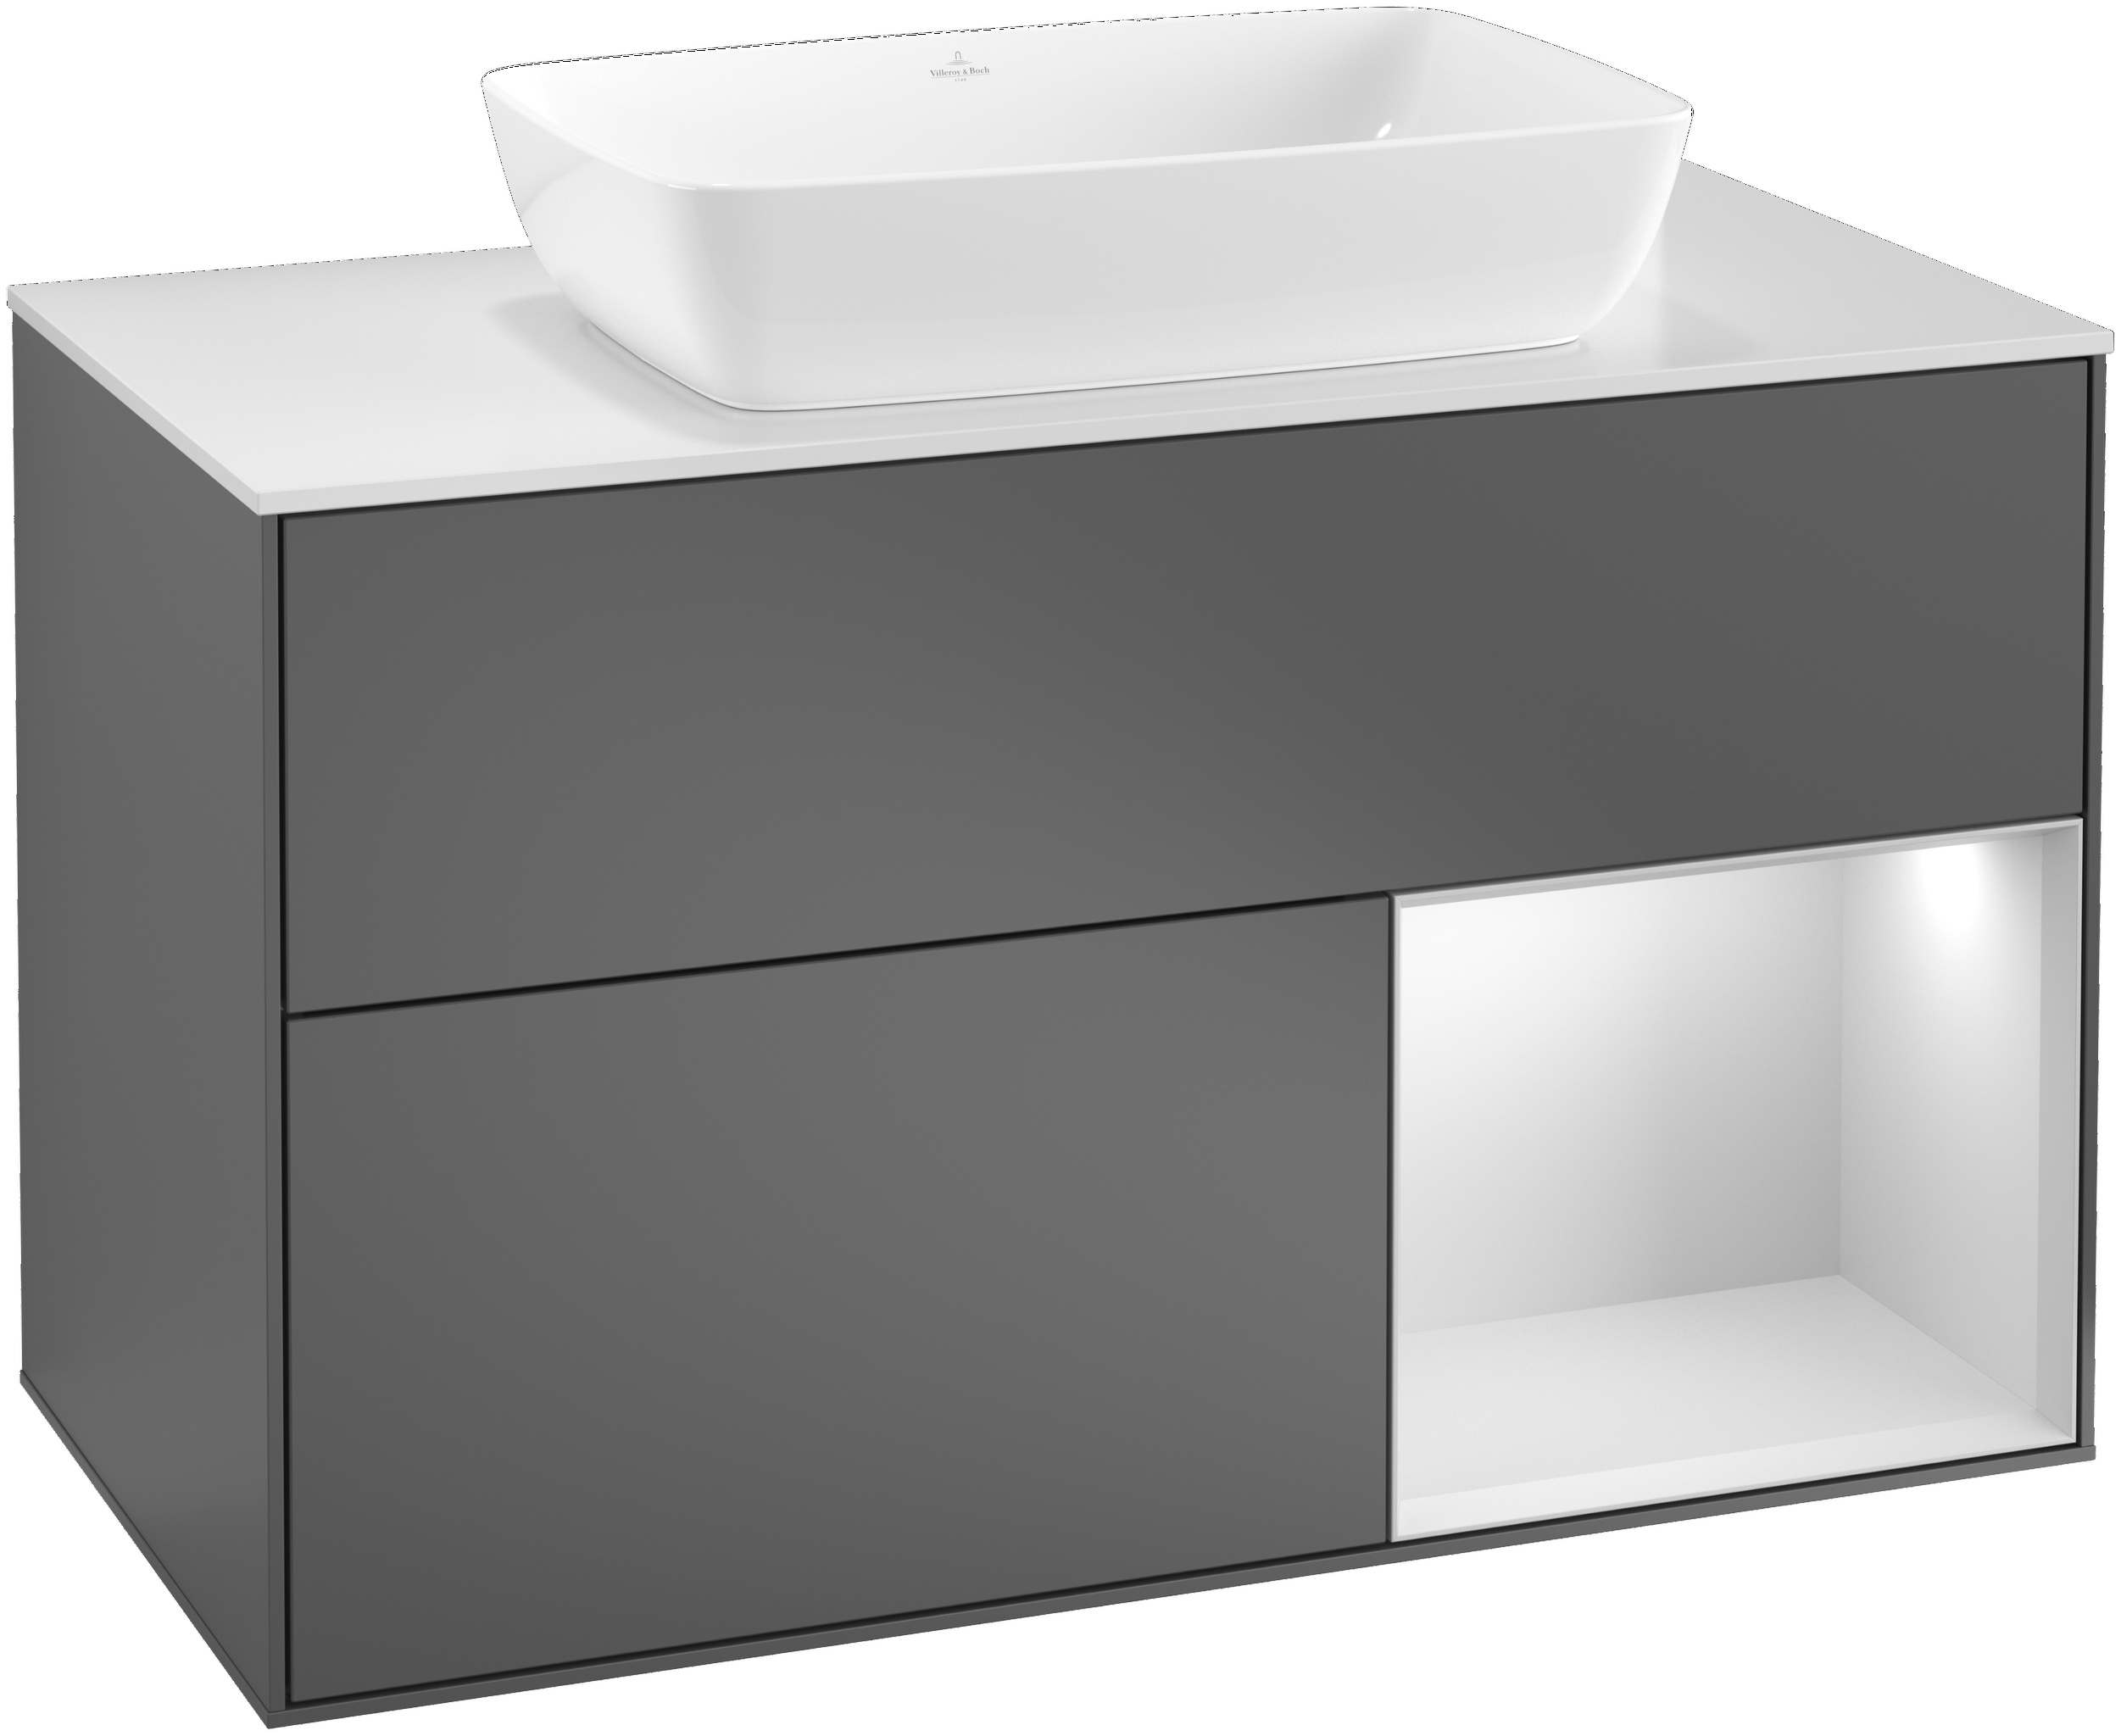 Villeroy & Boch Waschtischunterschrank „Finion“ für Schrankwaschtisch 100 × 60,3 × 50,1 cm 2 Schubladen, für Waschtischposition mittig, inkl. Beleuchtung in mittig